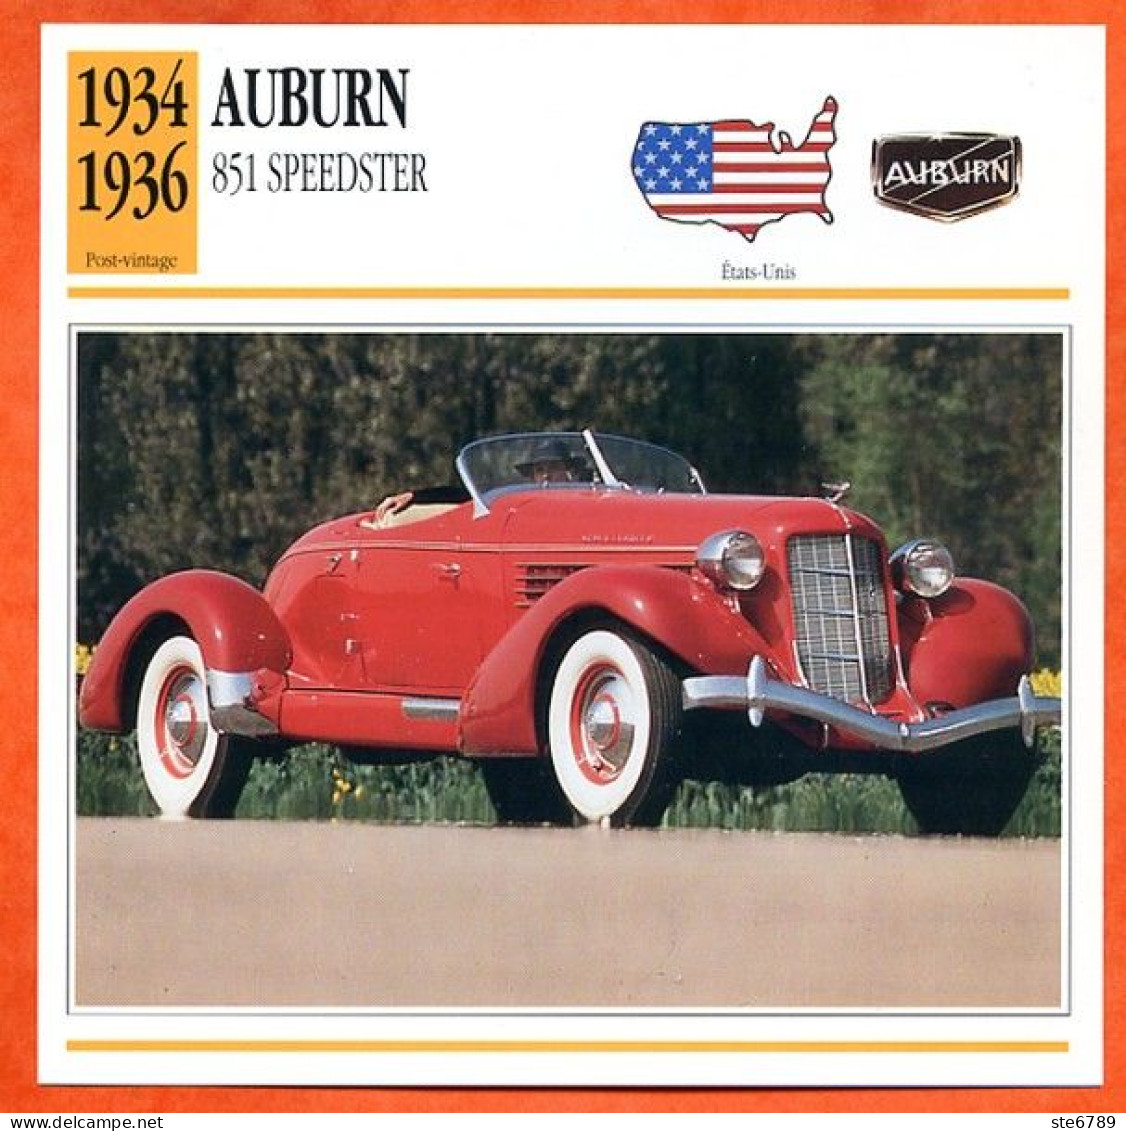 AUBURN 851 SPEEDSTER 1934 Voiture  USA  Auto Fiche Technique Automobile - Autos